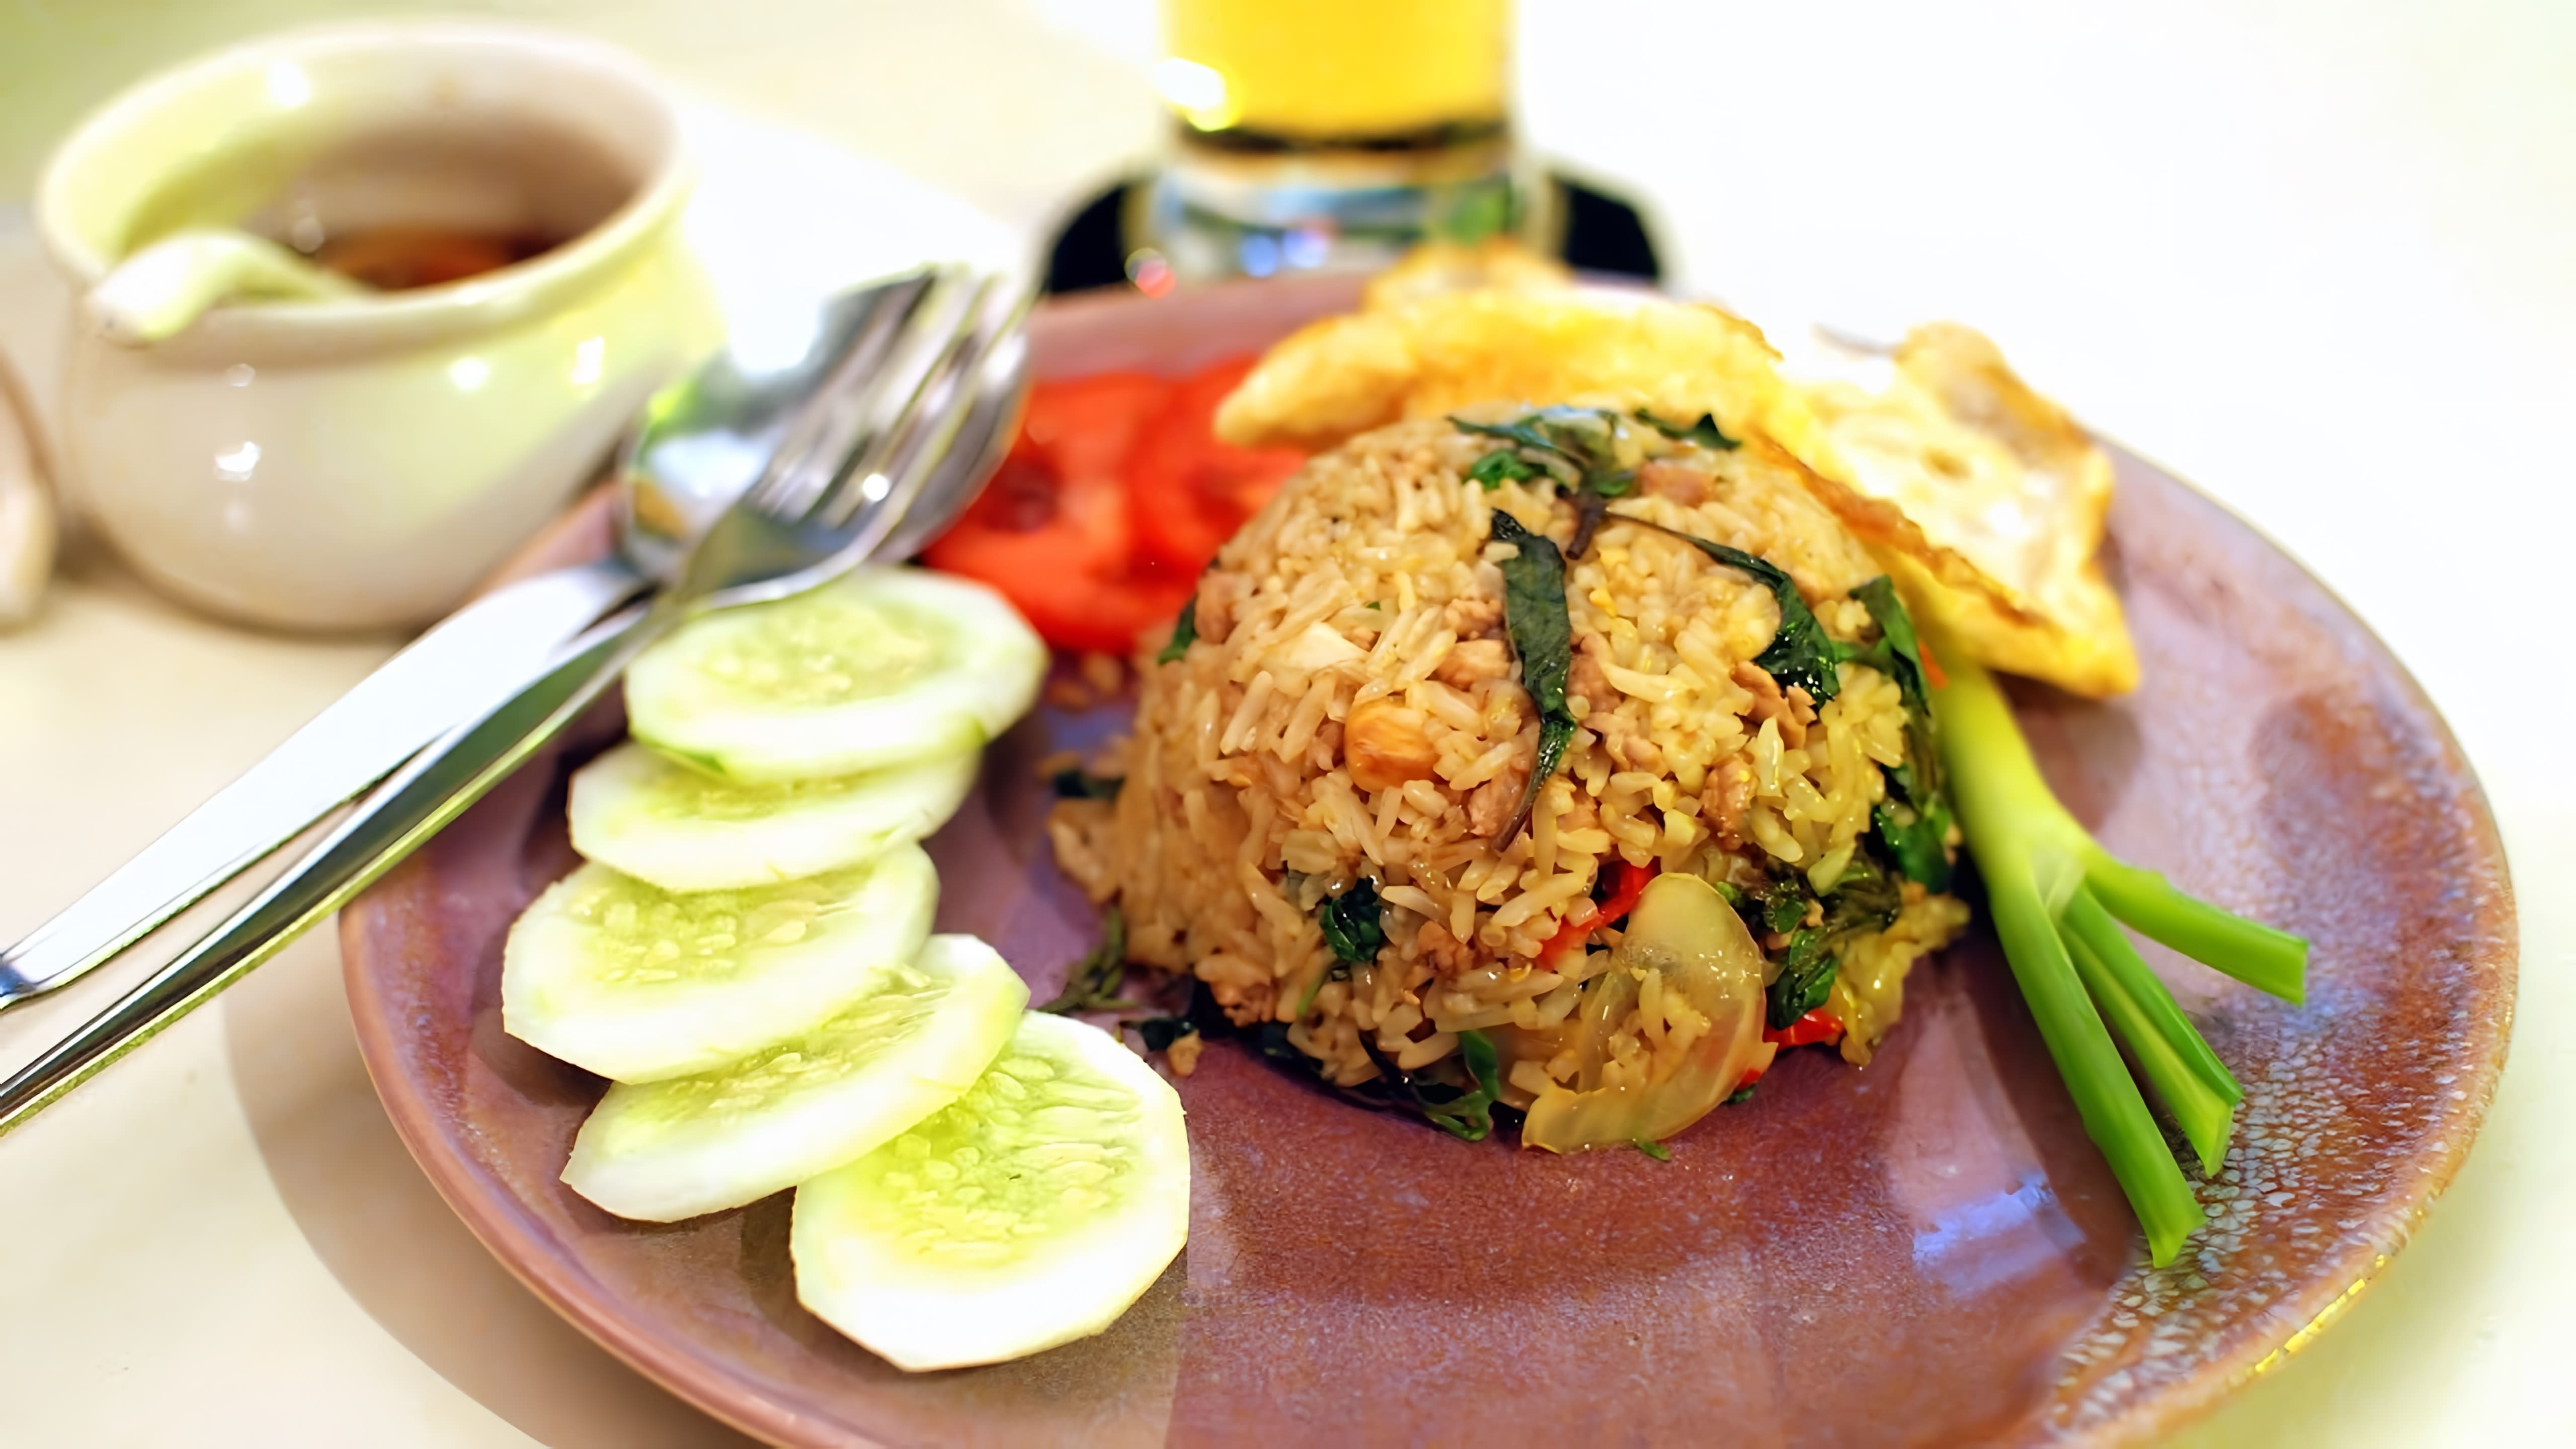 В этом видео демонстрируется процесс приготовления тайского блюда "Као пад гай" (жареный рис с курицей)